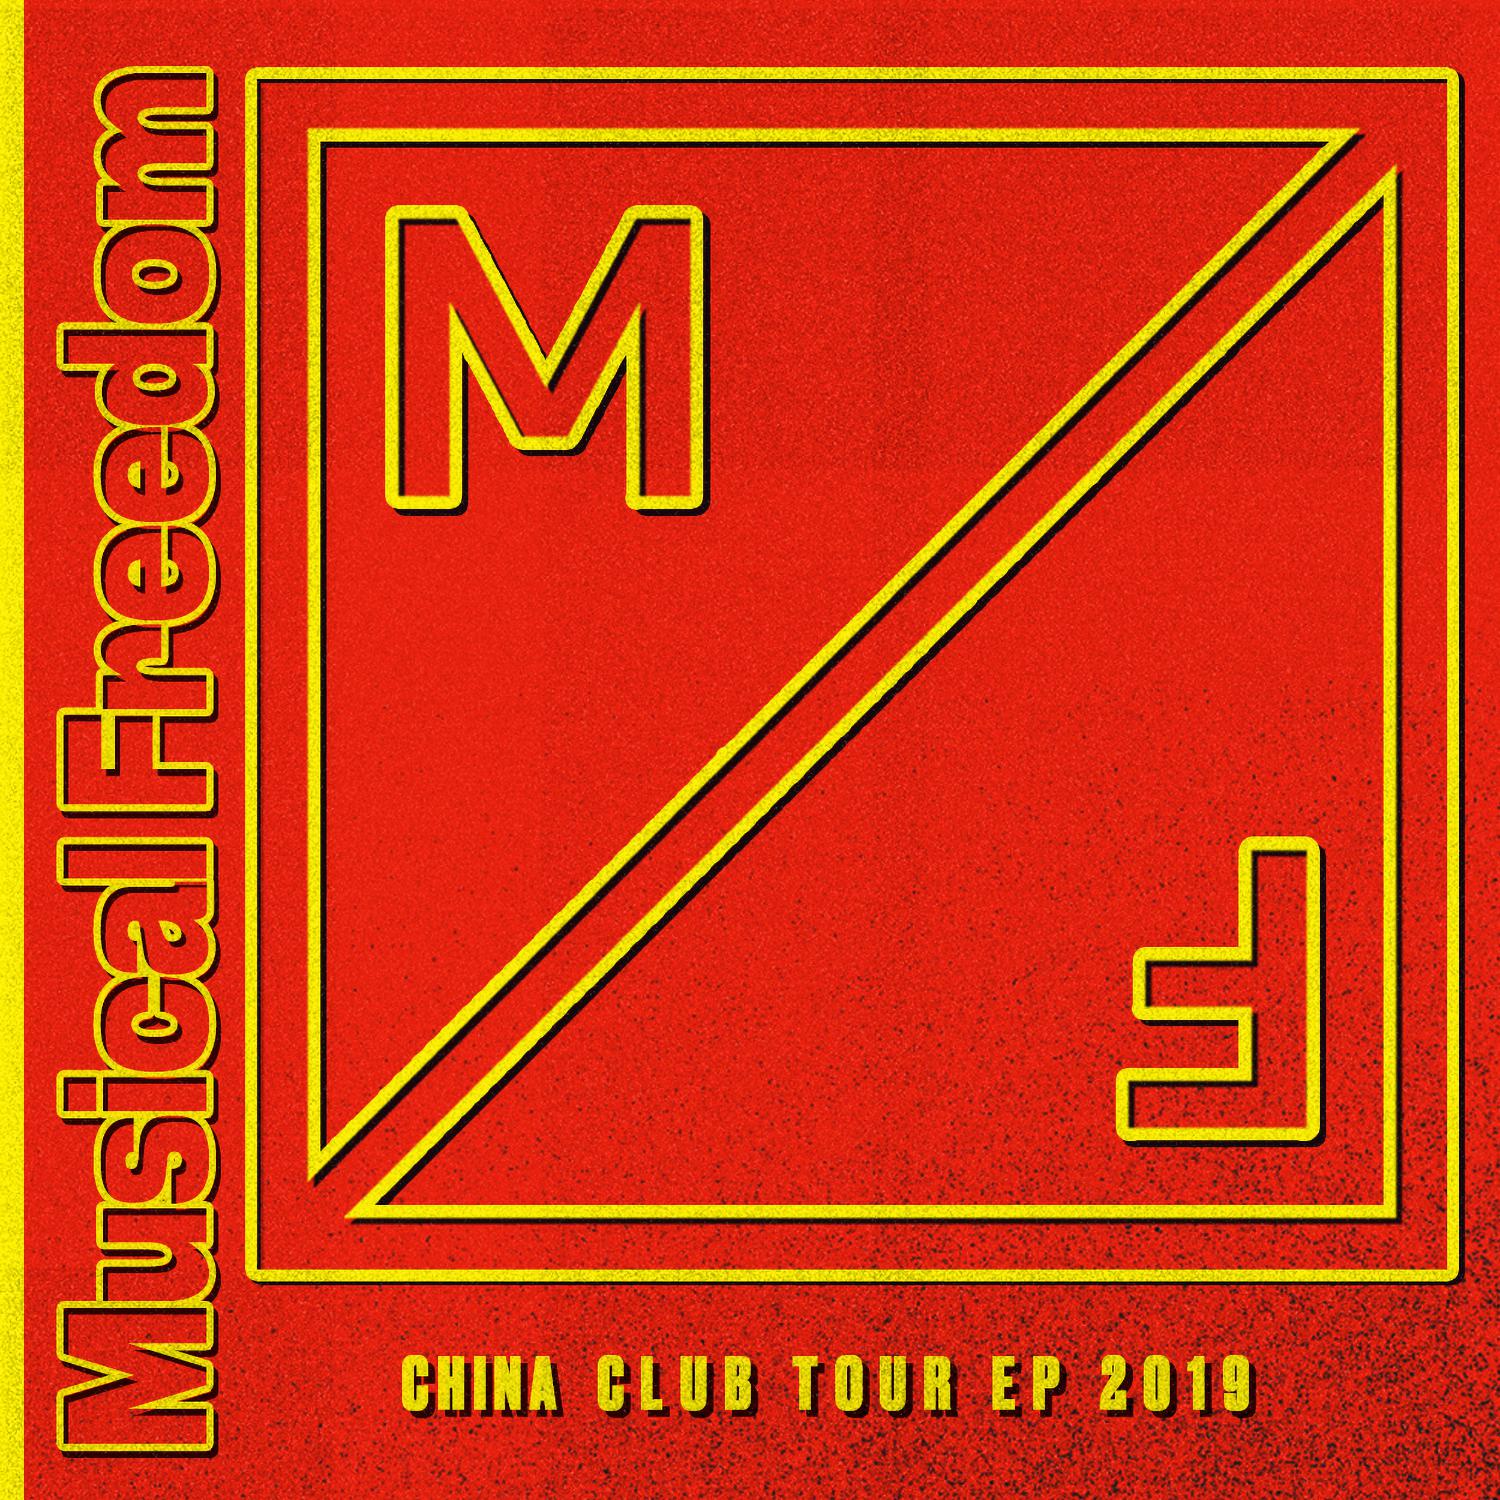 China Club Tour EP 2019